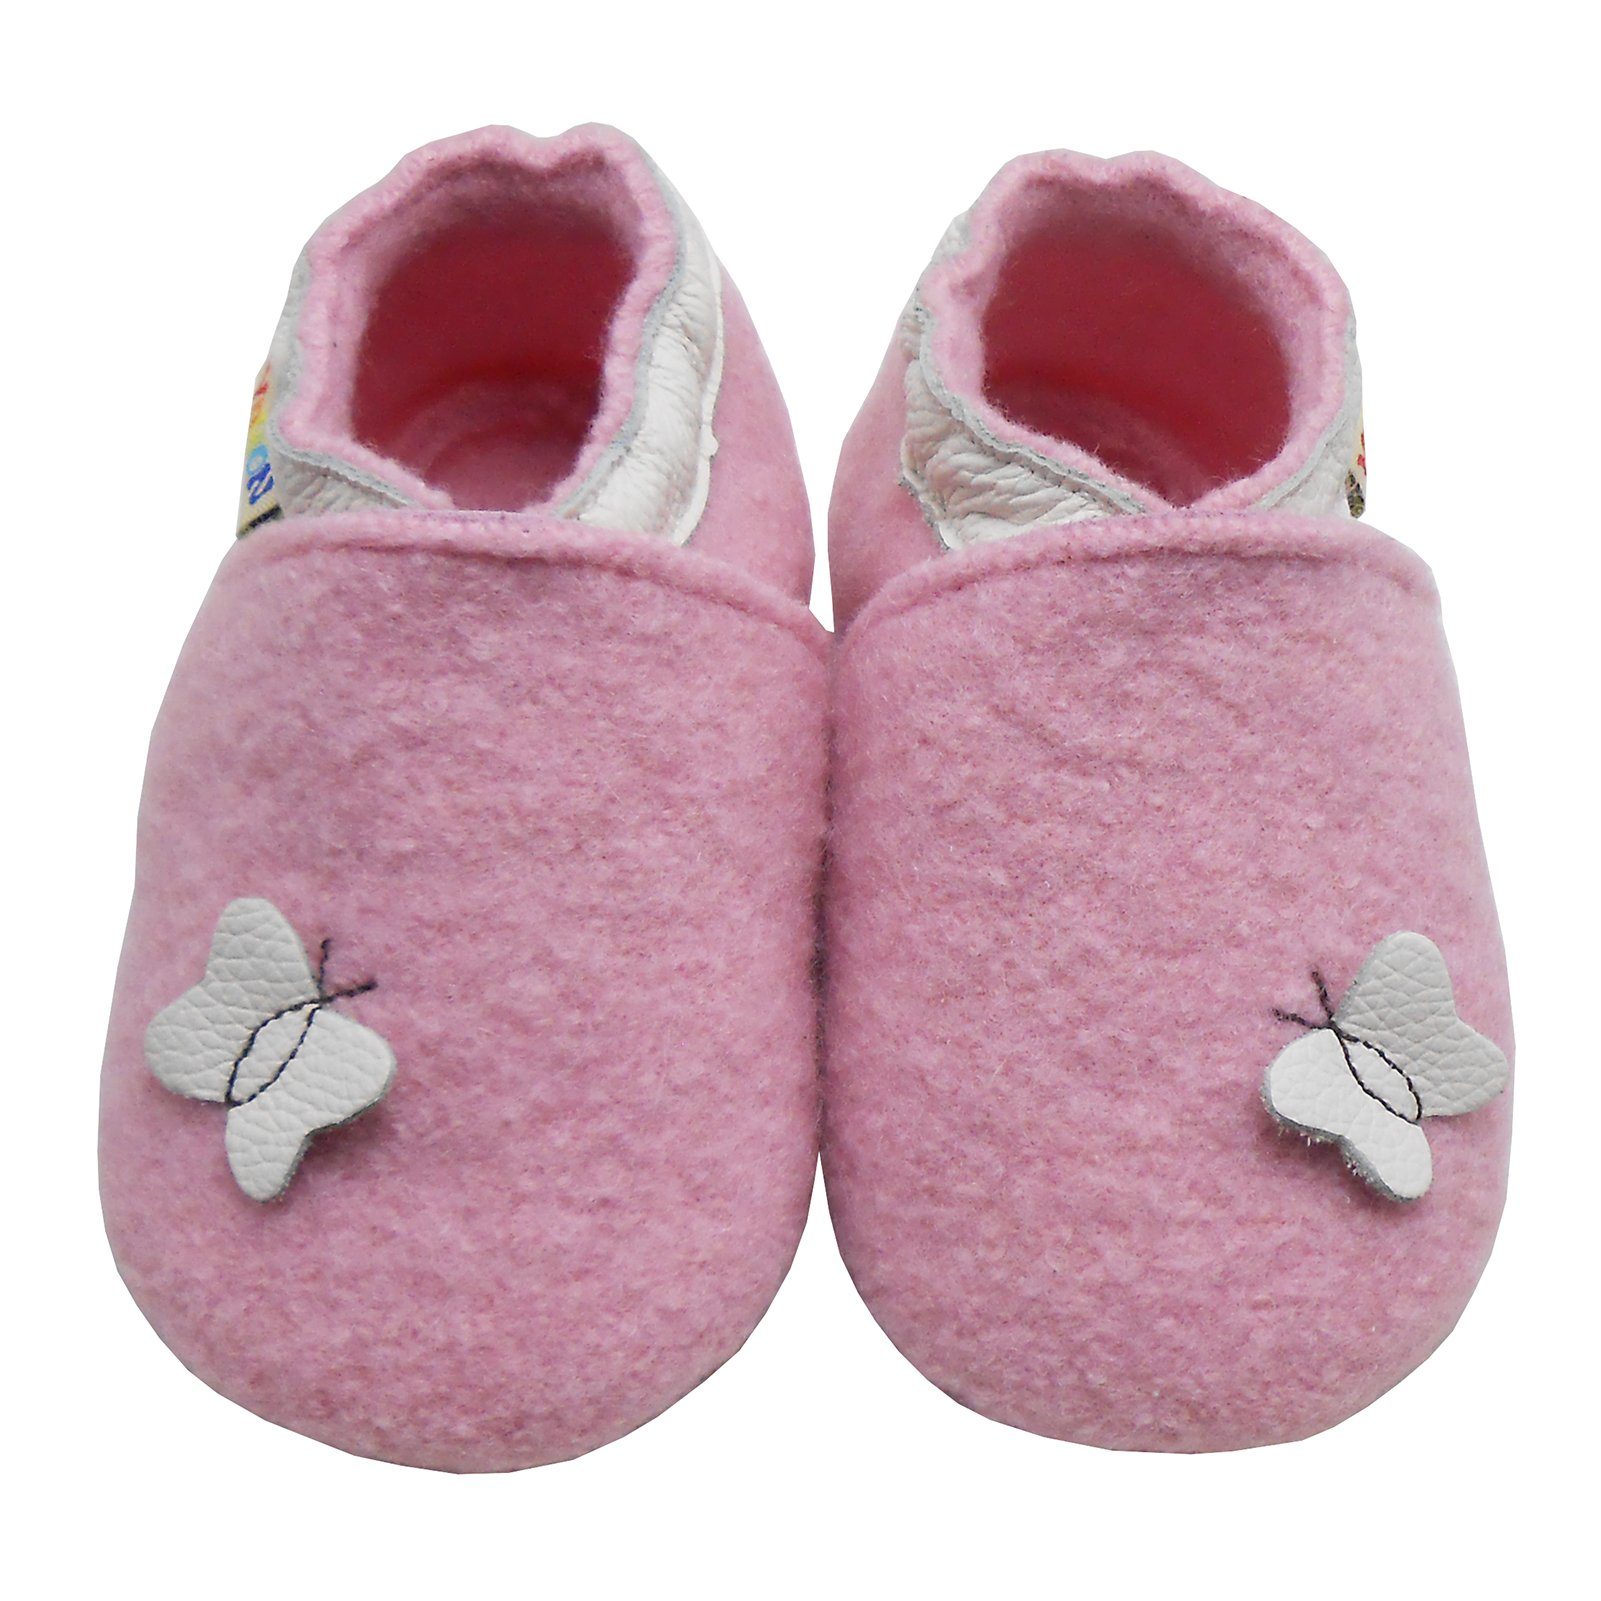 Schuhe Babyschuhe Mädchen Yalion Schuhe Kinder Anti Schweiß Krabbelschuh Filz Hausschuhe aus 100% Schafwolle, Schmetterlings Ros